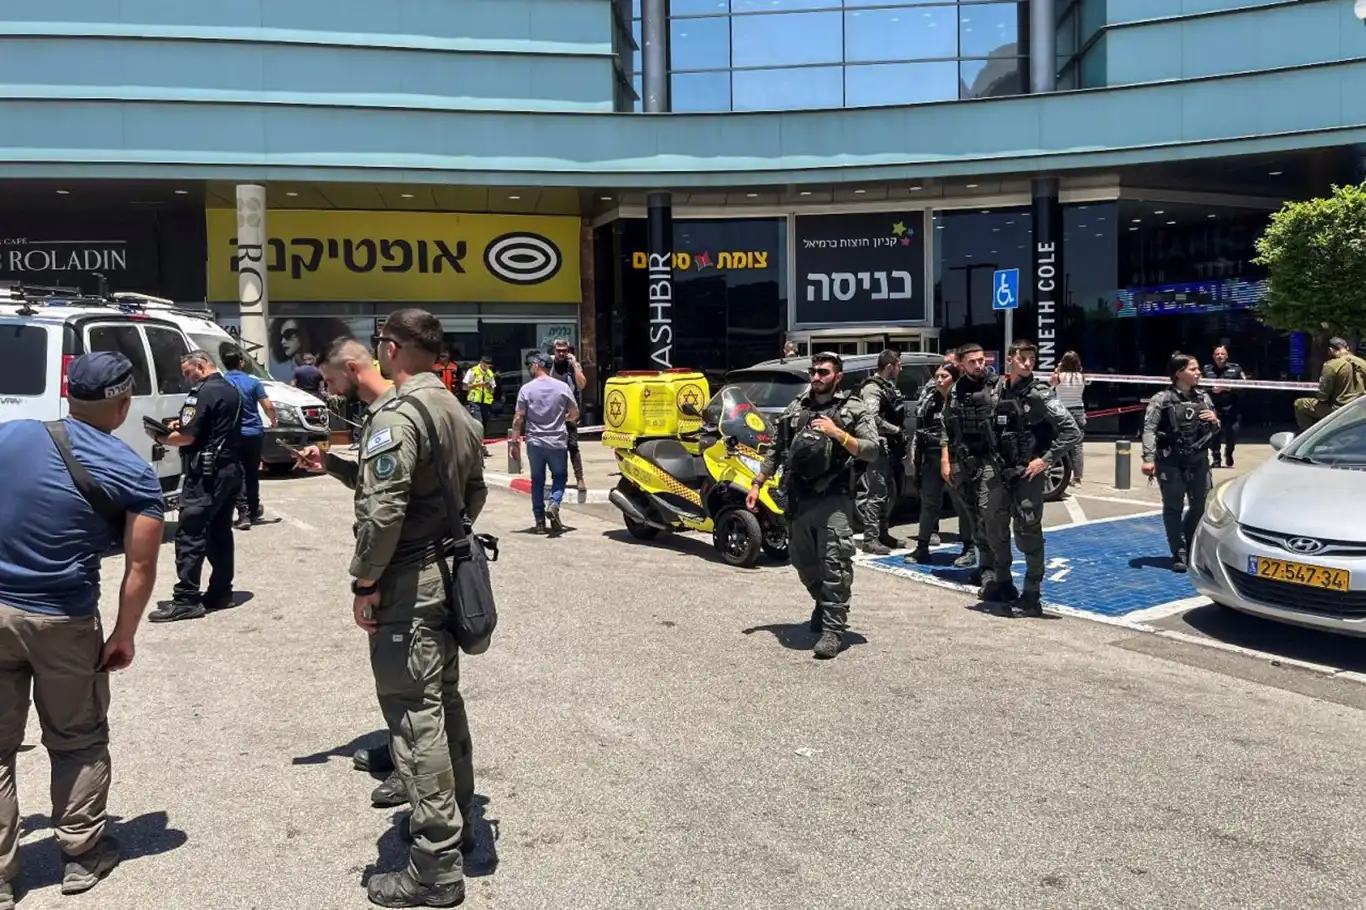 Yukarı Celile'de Feda Eylemi: 1 İsrail Askeri Öldü